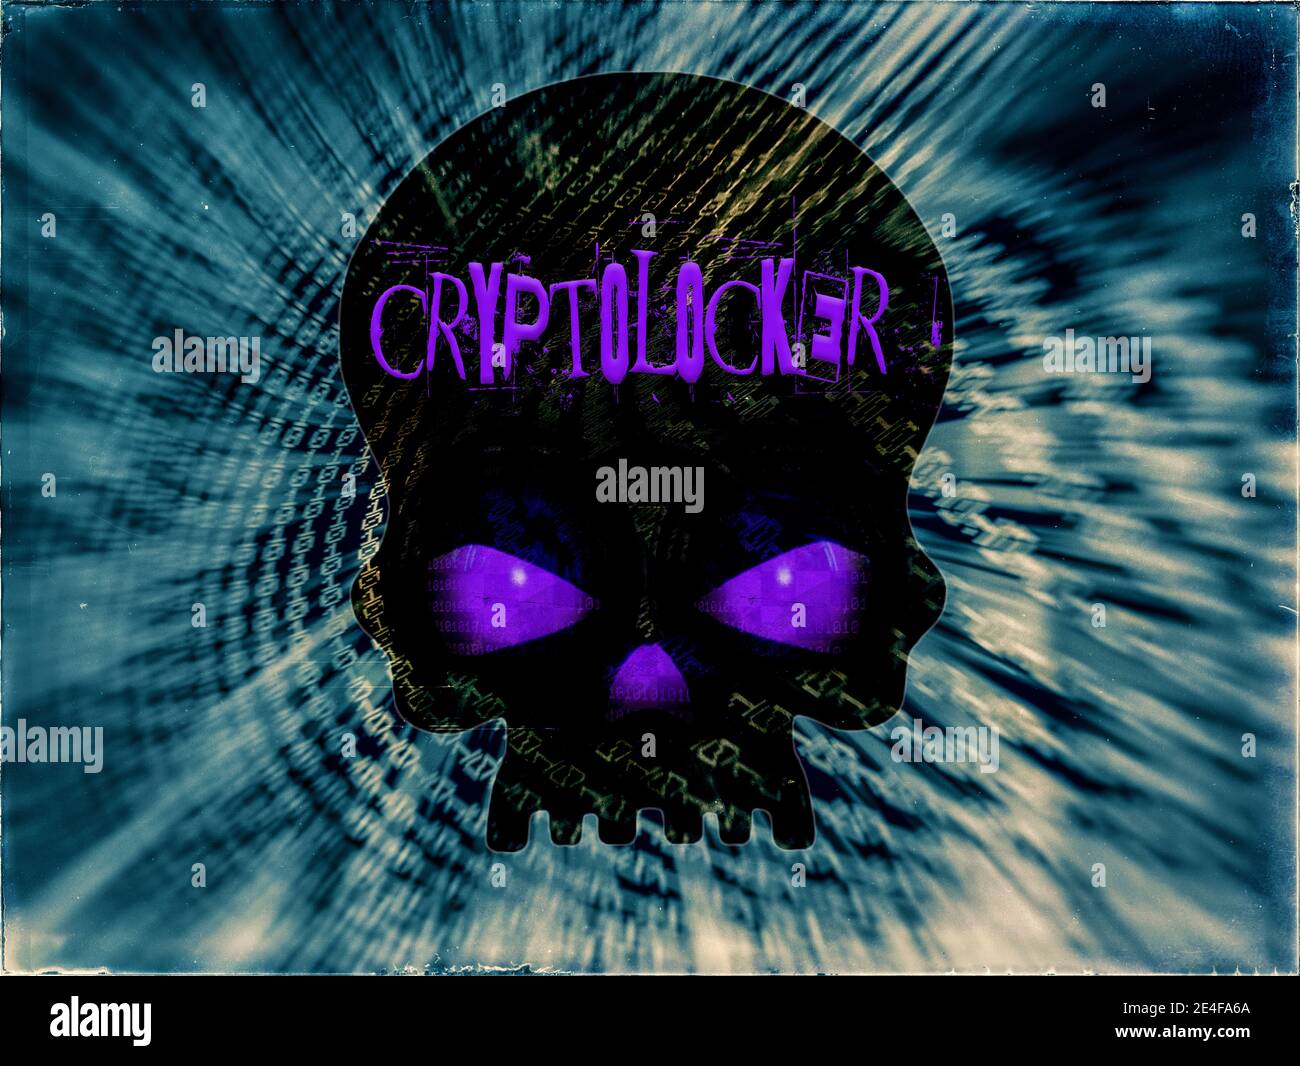 Ein Computer Ransomware Angriff, CryptoLocker über einen schwarzen Schädel mit glühenden lila Dämon Augen geschrieben, auf Binärcode verzogen blauen Hintergrund Stockfoto